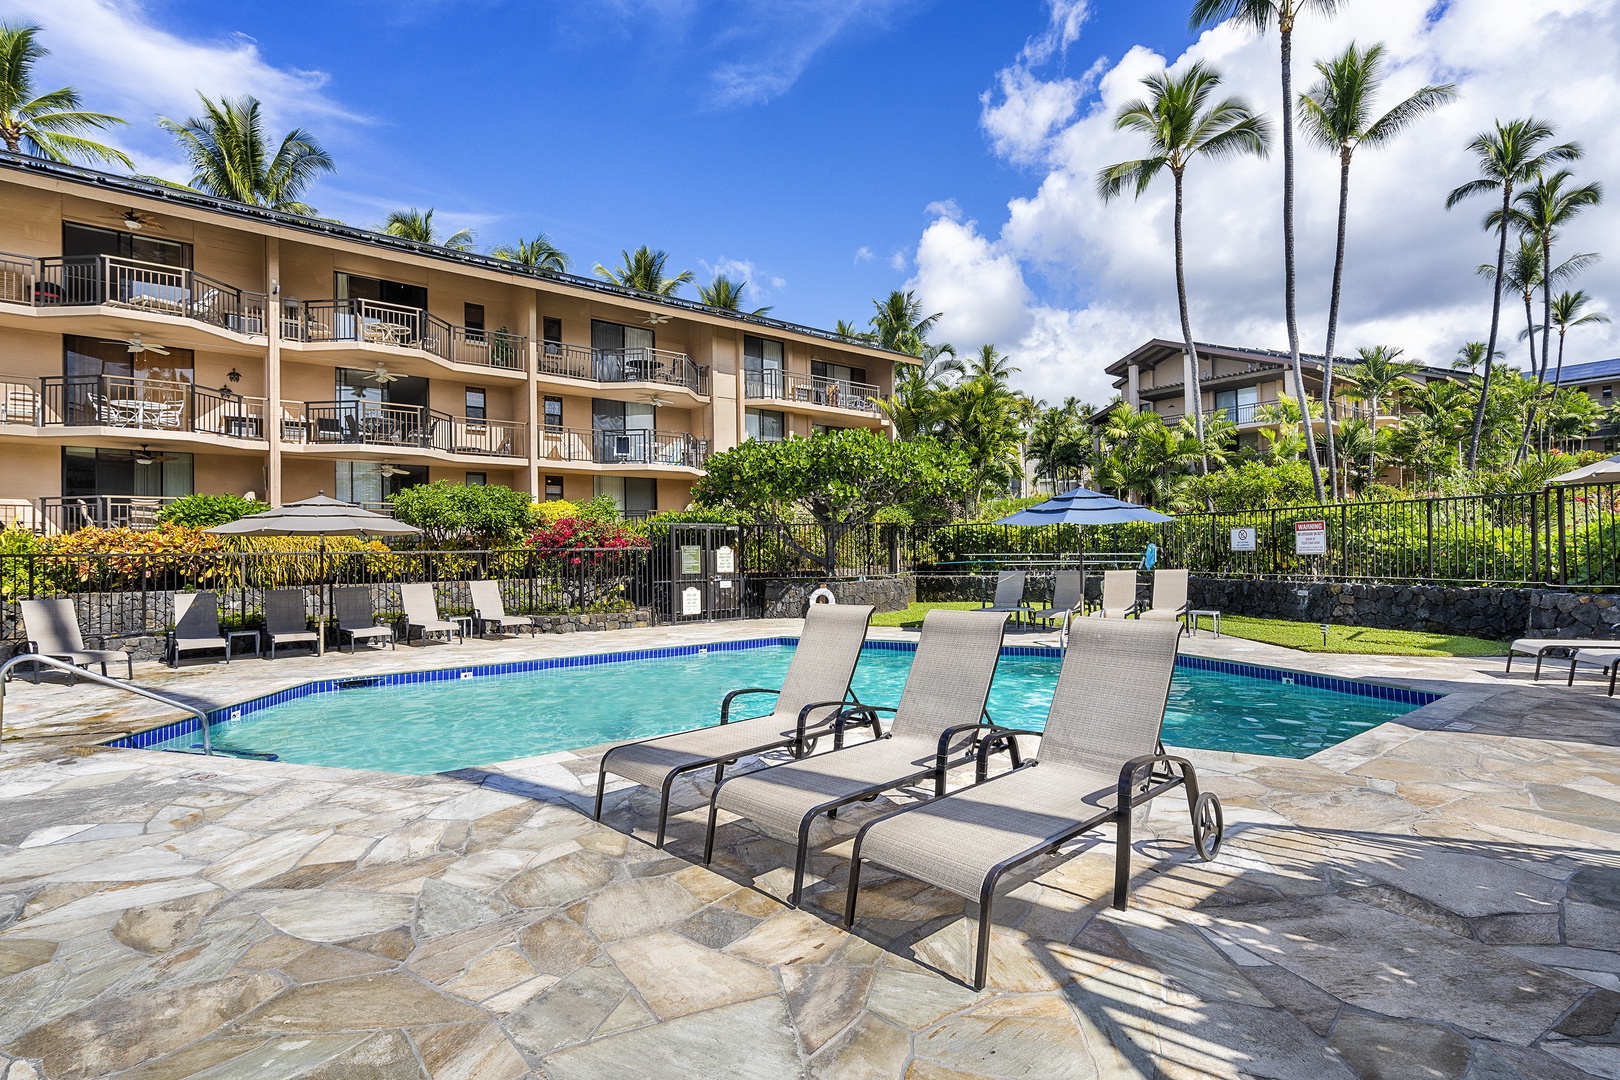 Kailua Kona Vacation Rentals, Kona Makai 3102 - Lounge by the pool!